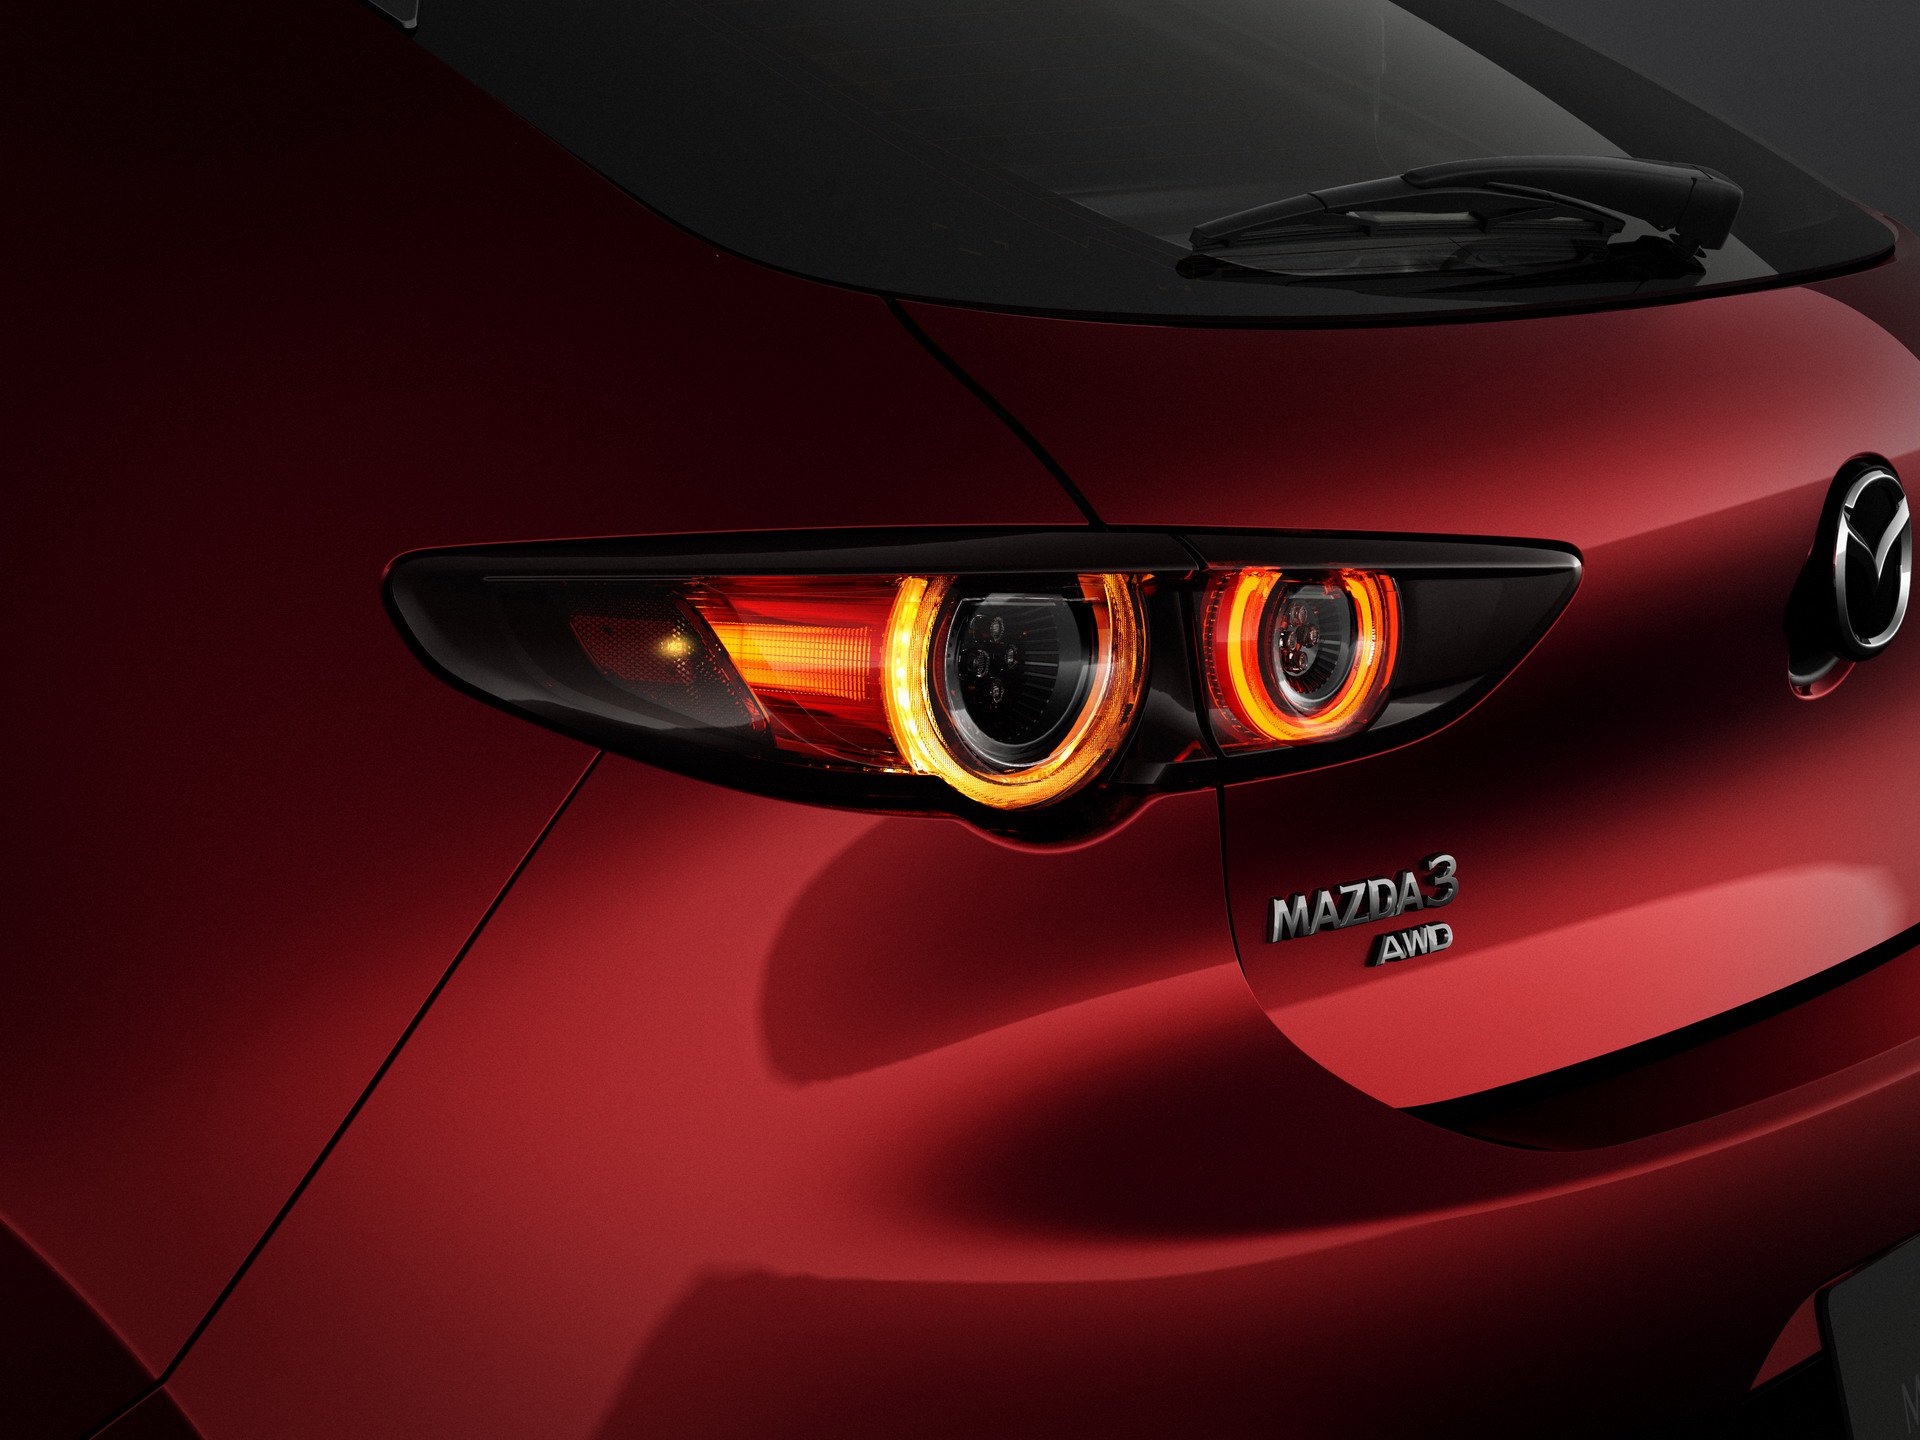 2019 Mazda 3 tanıtıldı: yenilenen donanımlar ve Skyactiv-X motor